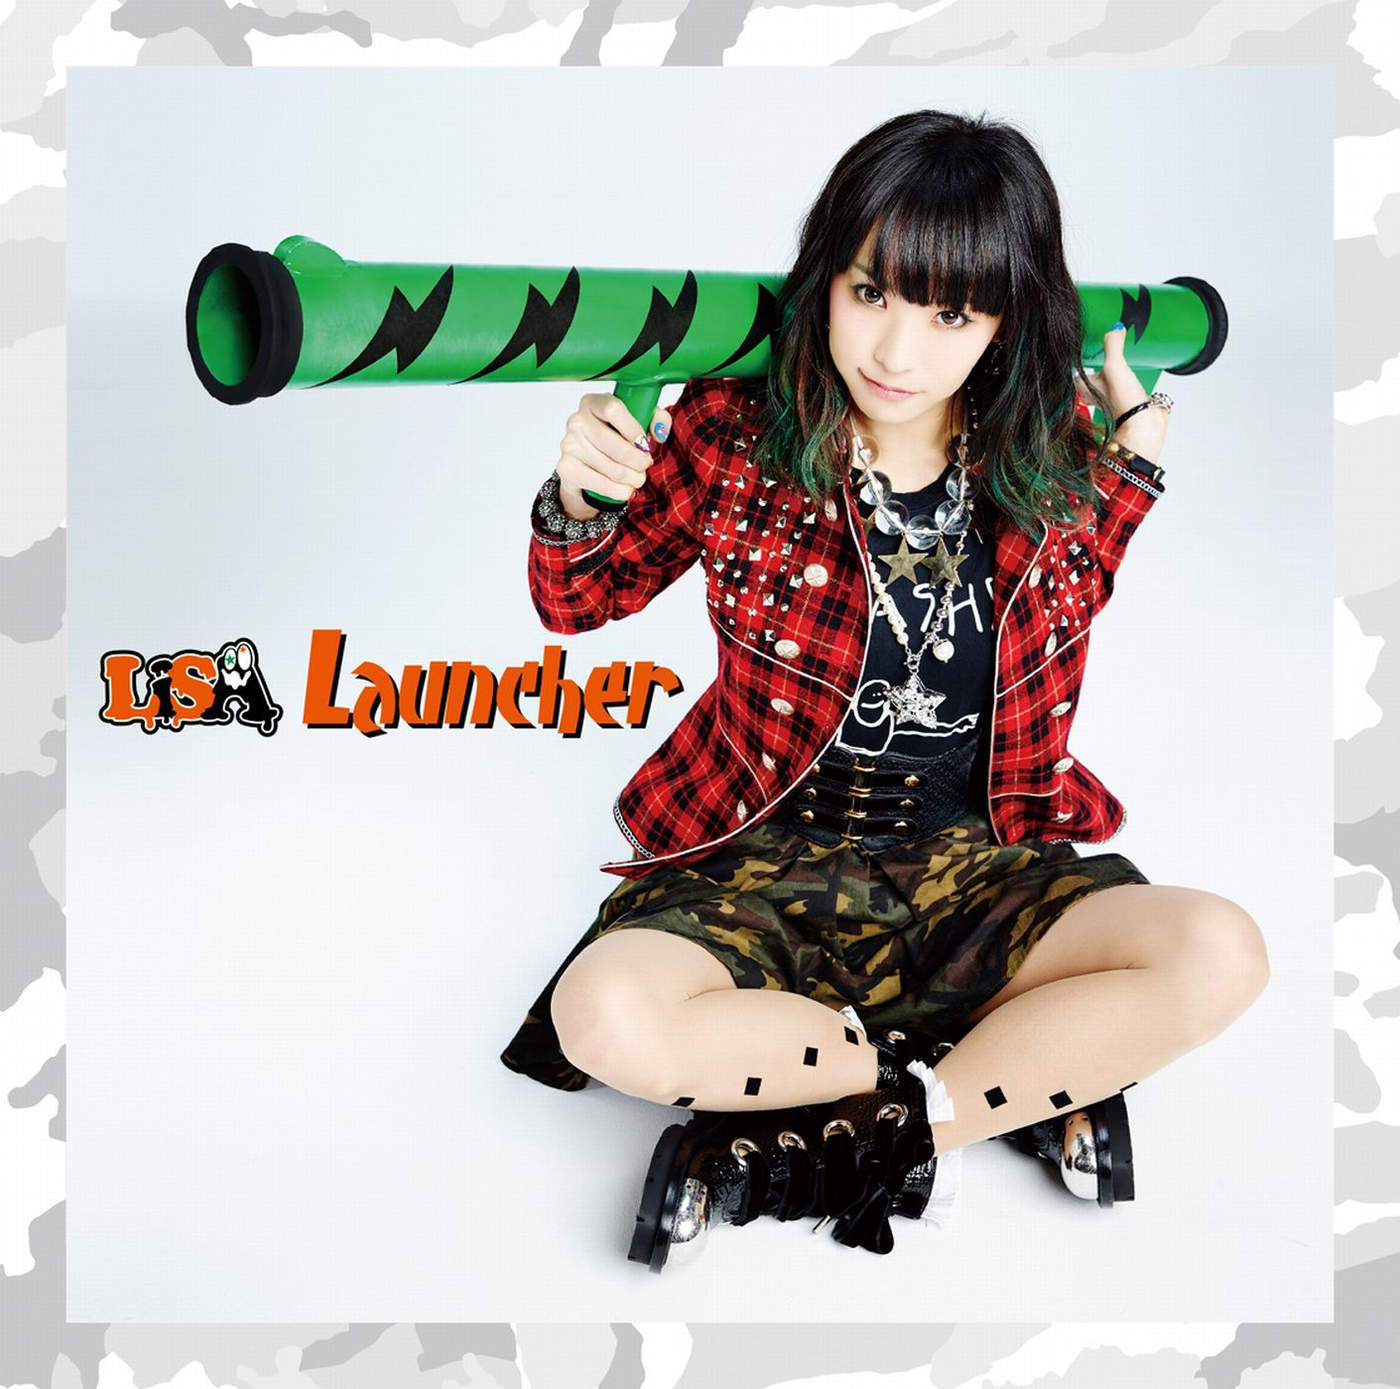 20151118.02 LiSA - Launcher cover 1.jpg